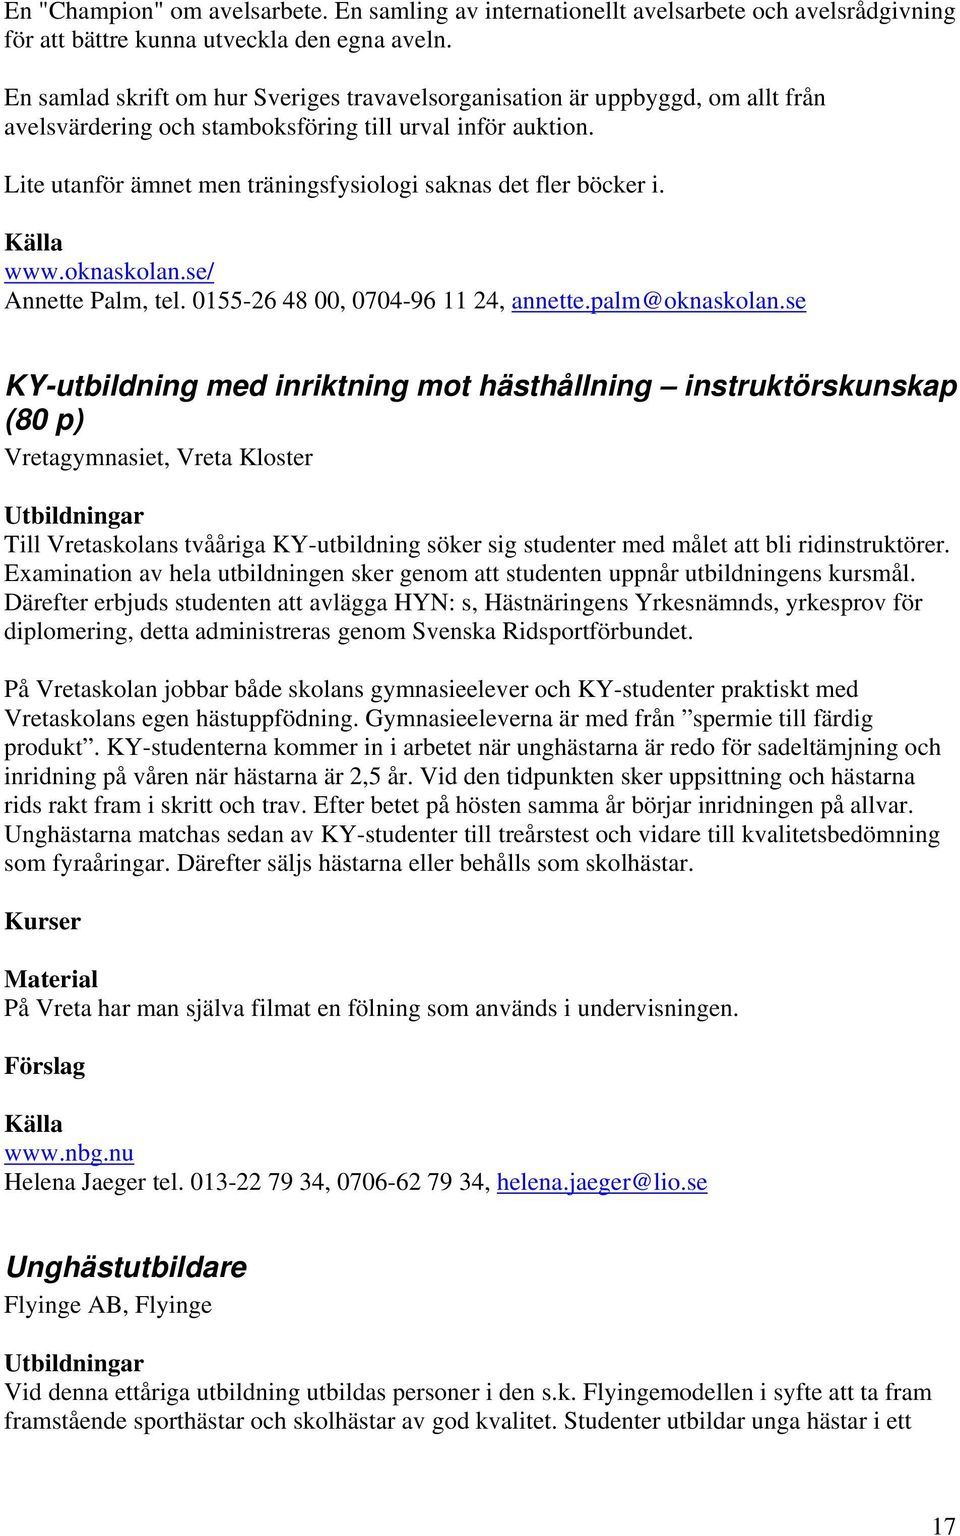 Lite utanför ämnet men träningsfysiologi saknas det fler böcker i. www.oknaskolan.se/ Annette Palm, tel. 0155-26 48 00, 0704-96 11 24, annette.palm@oknaskolan.